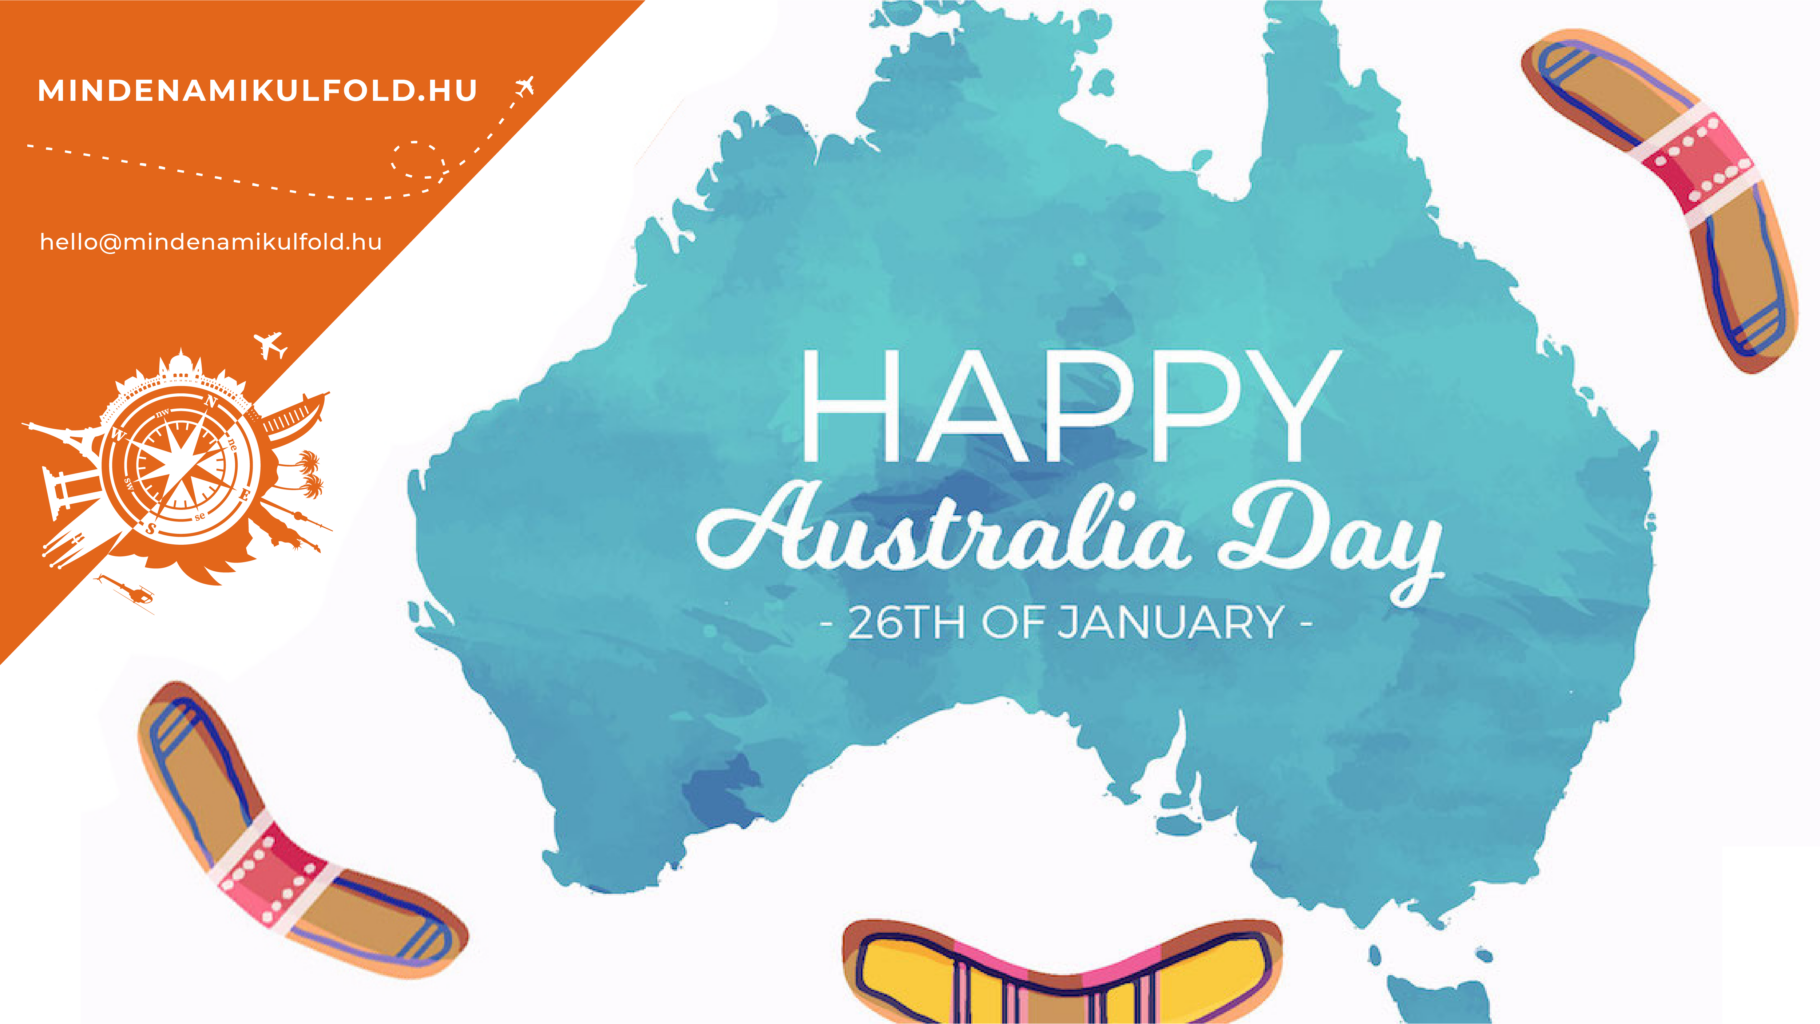 Ausztrália hivatalos nemzeti ünnepe az Ausztrália Nap (Australia Day), amit minden év január 26-án ünnepelnek. TUDJ MEG TÖBBET >>>